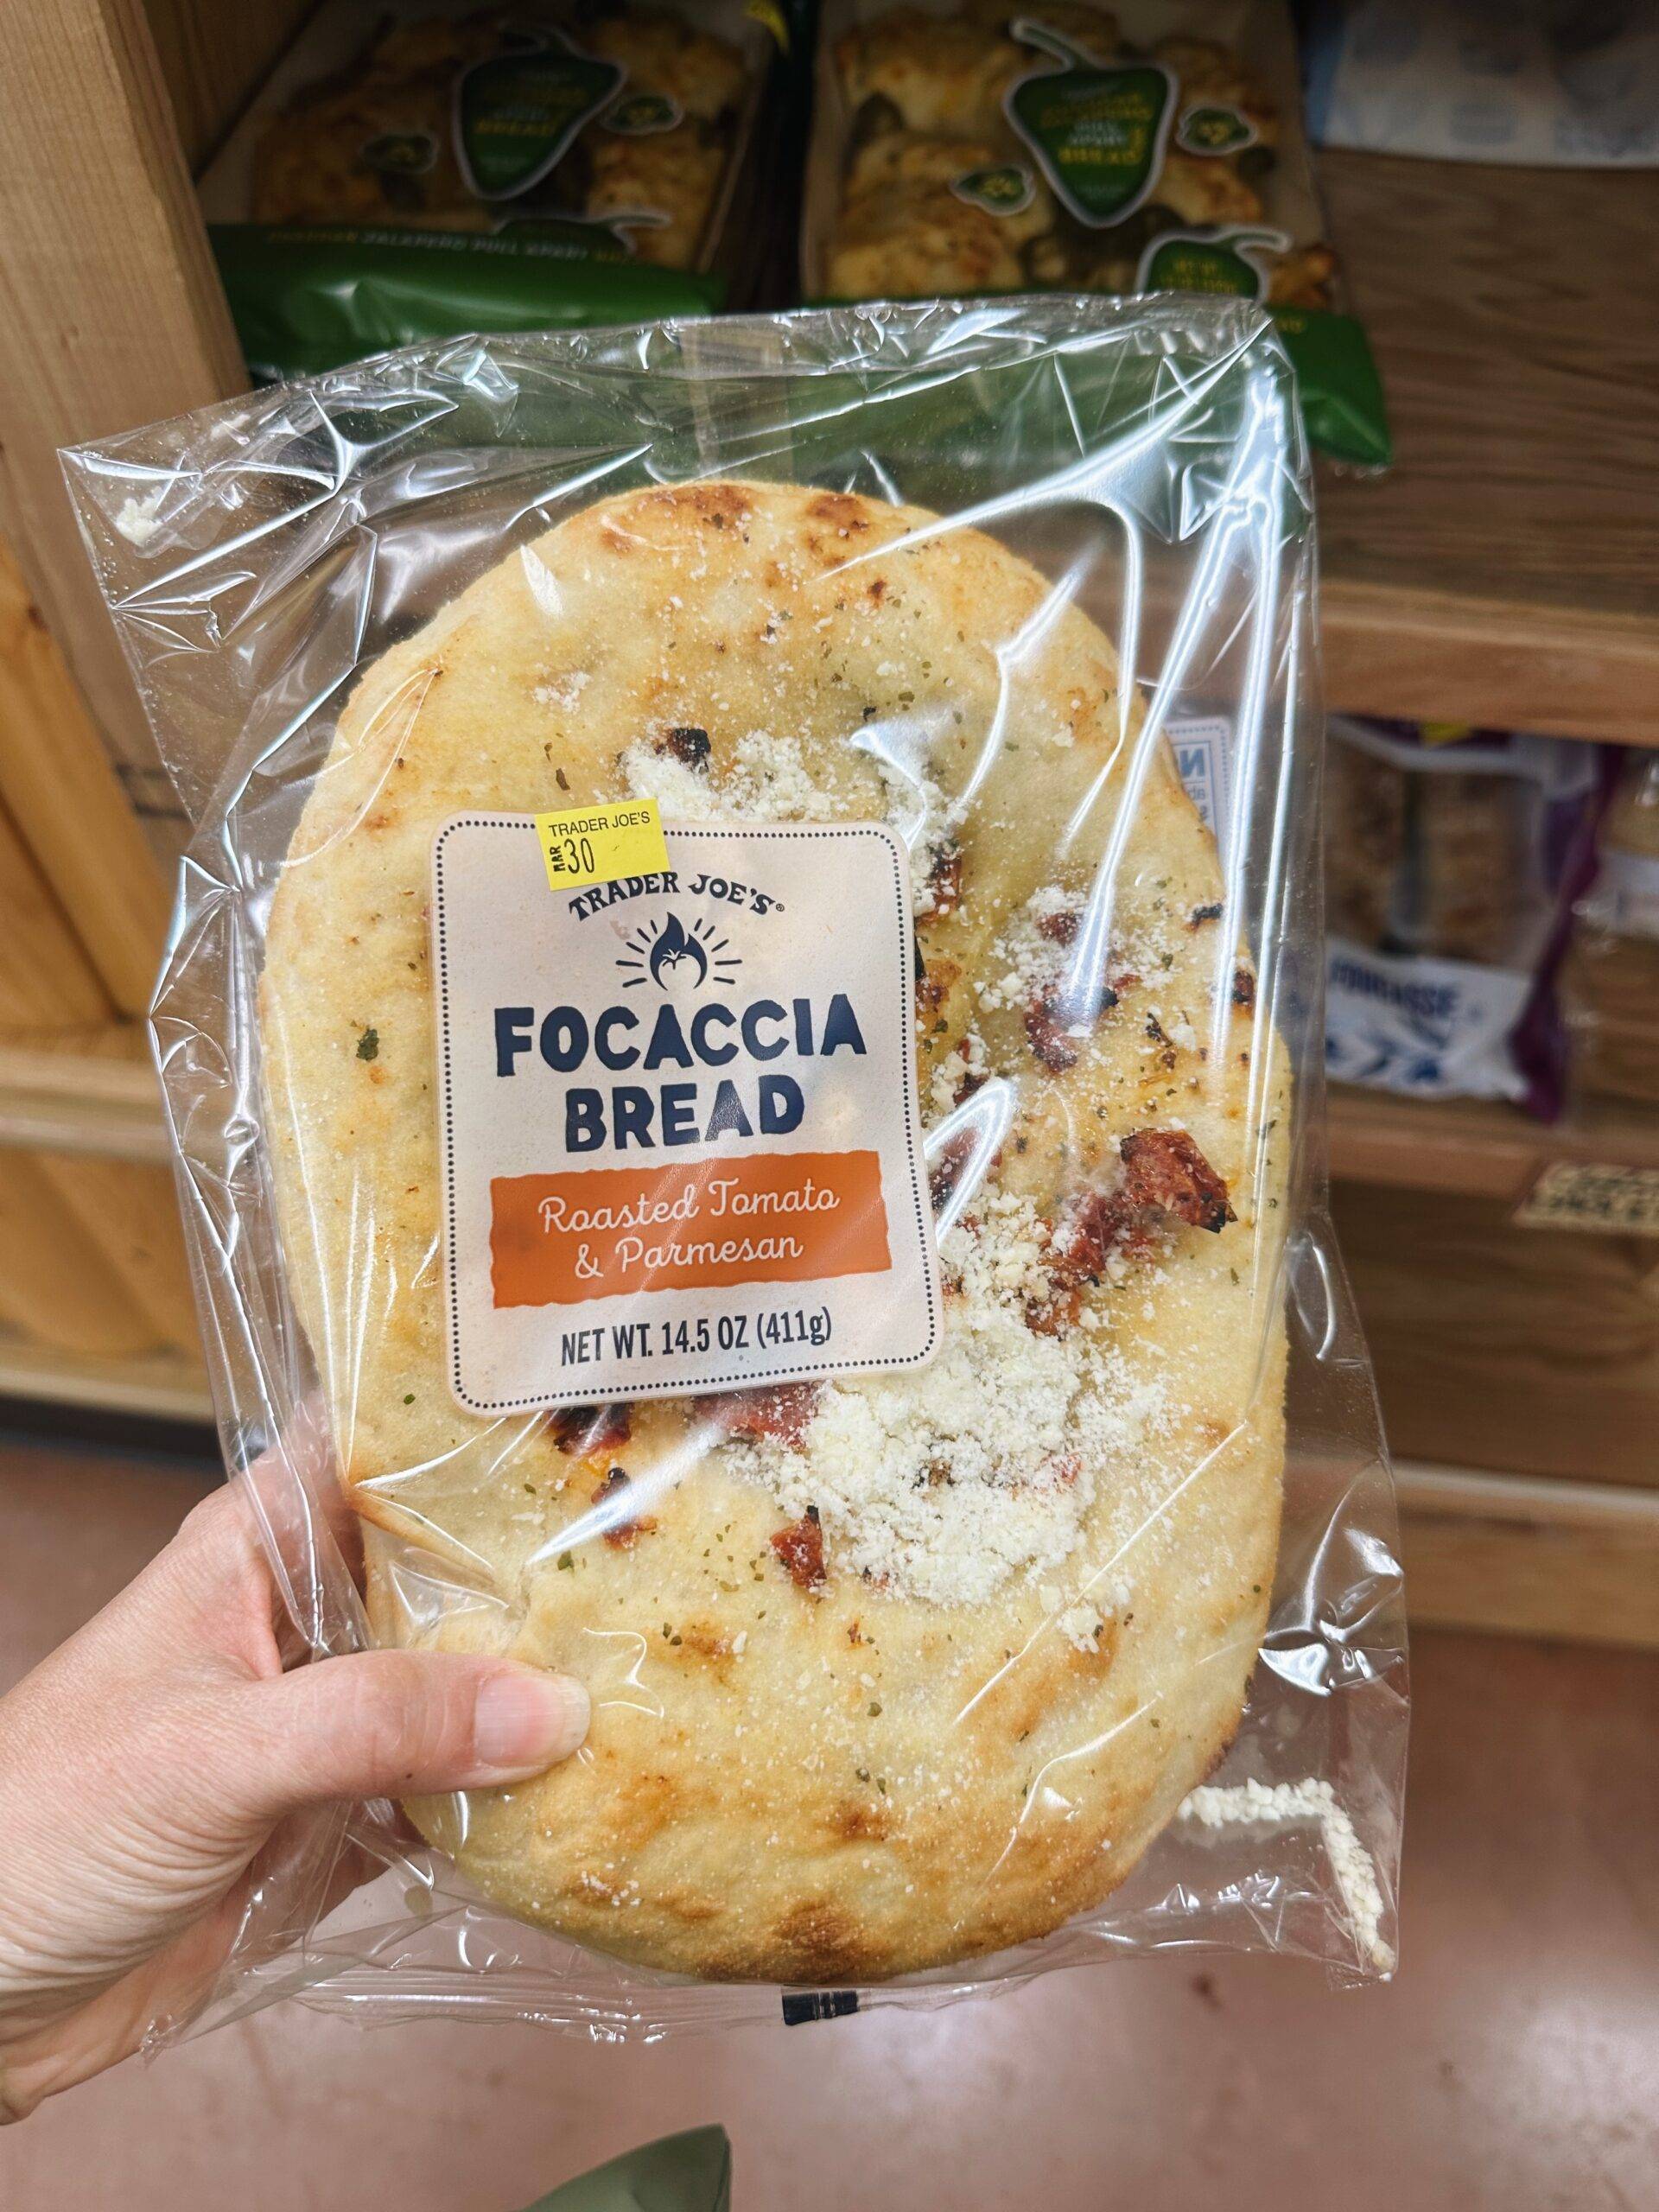 Roasted tomato focaccia bread in a bag.